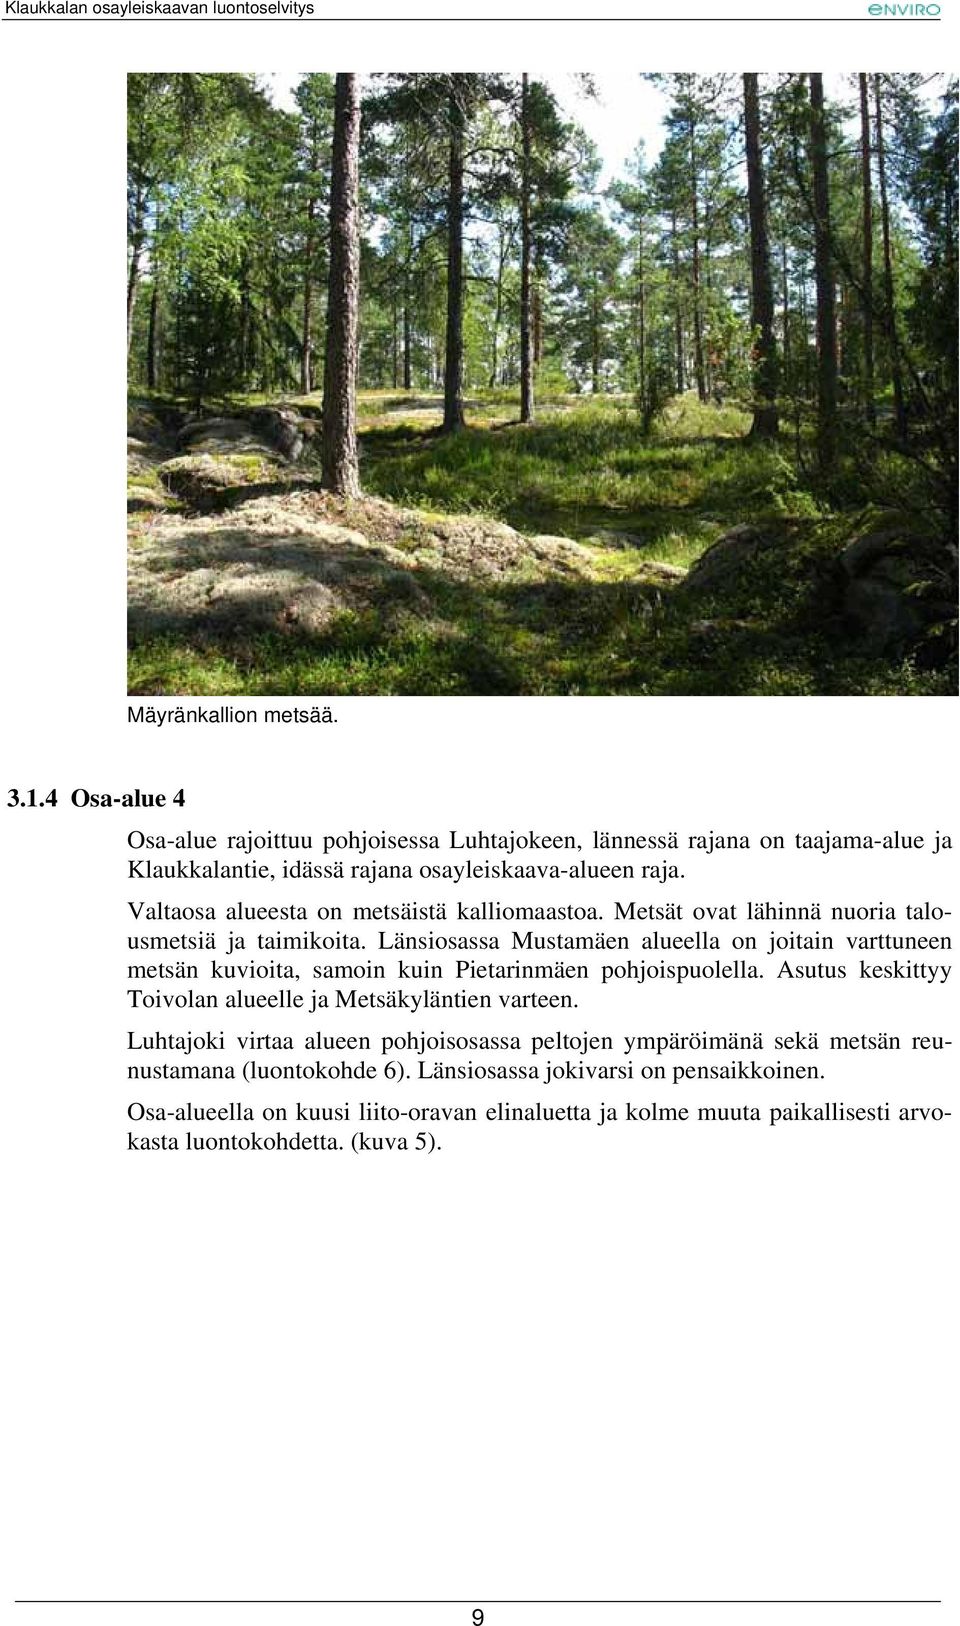 Länsiosassa Mustamäen alueella on joitain varttuneen metsän kuvioita, samoin kuin Pietarinmäen pohjoispuolella. Asutus keskittyy Toivolan alueelle ja Metsäkyläntien varteen.